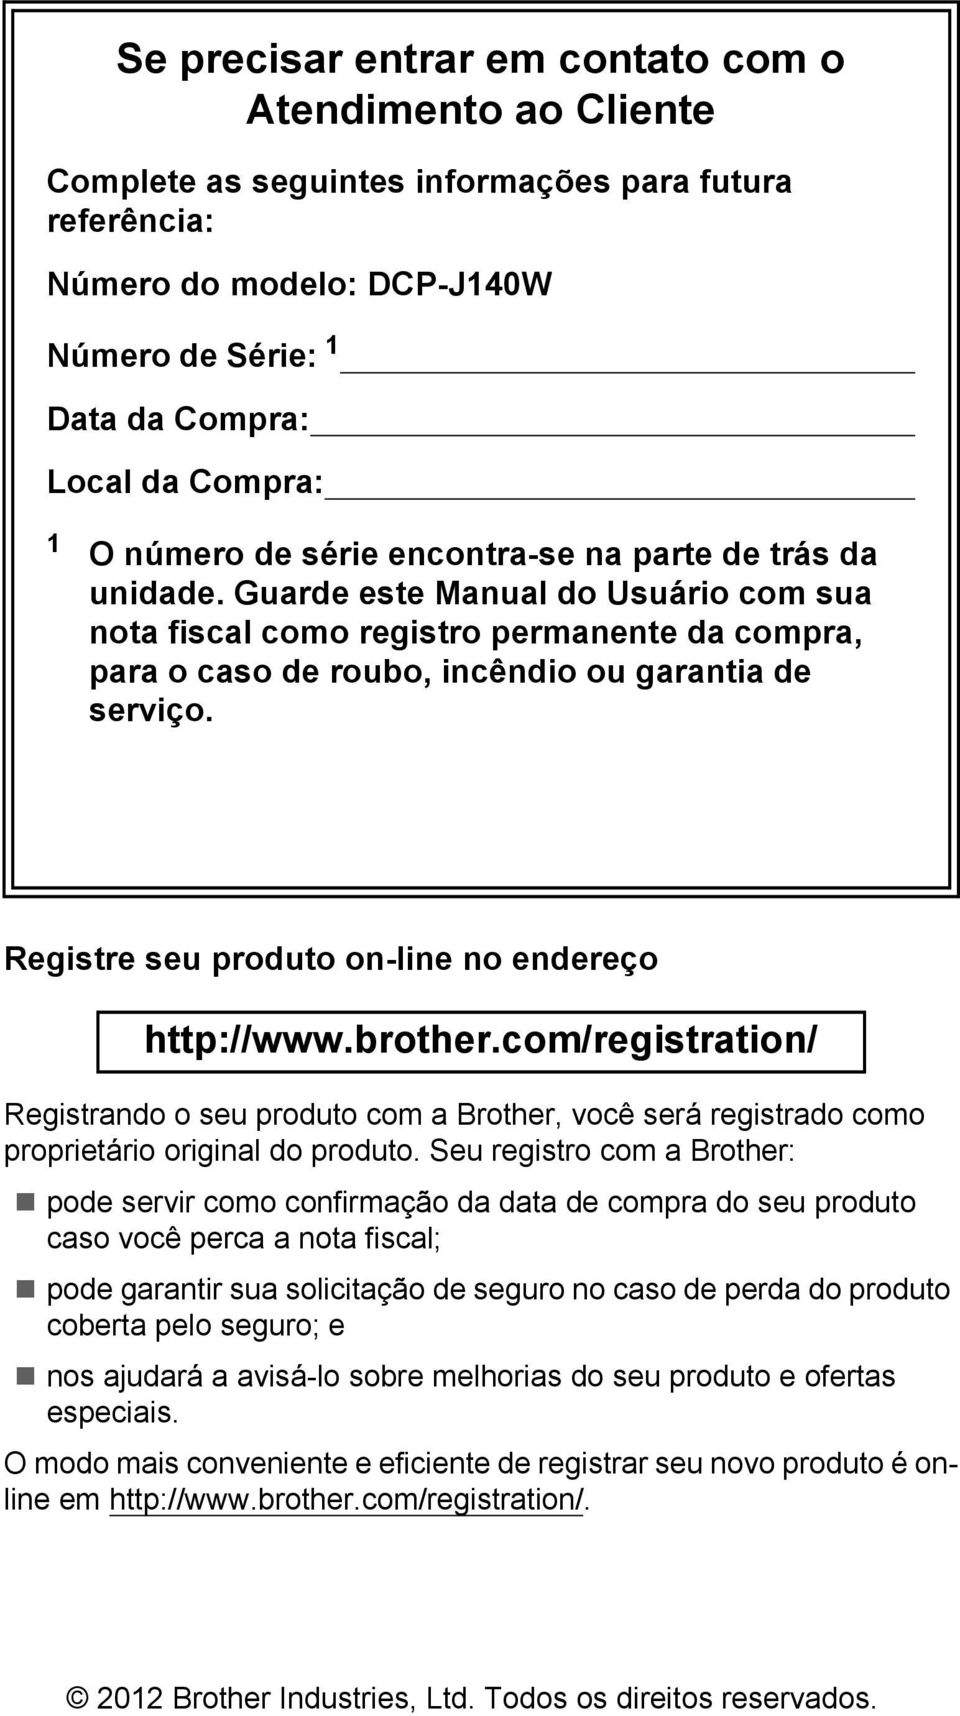 Registre seu produto on-line no endereço http://www.brother.com/registration/ Registrando o seu produto com a Brother, você será registrado como proprietário original do produto.